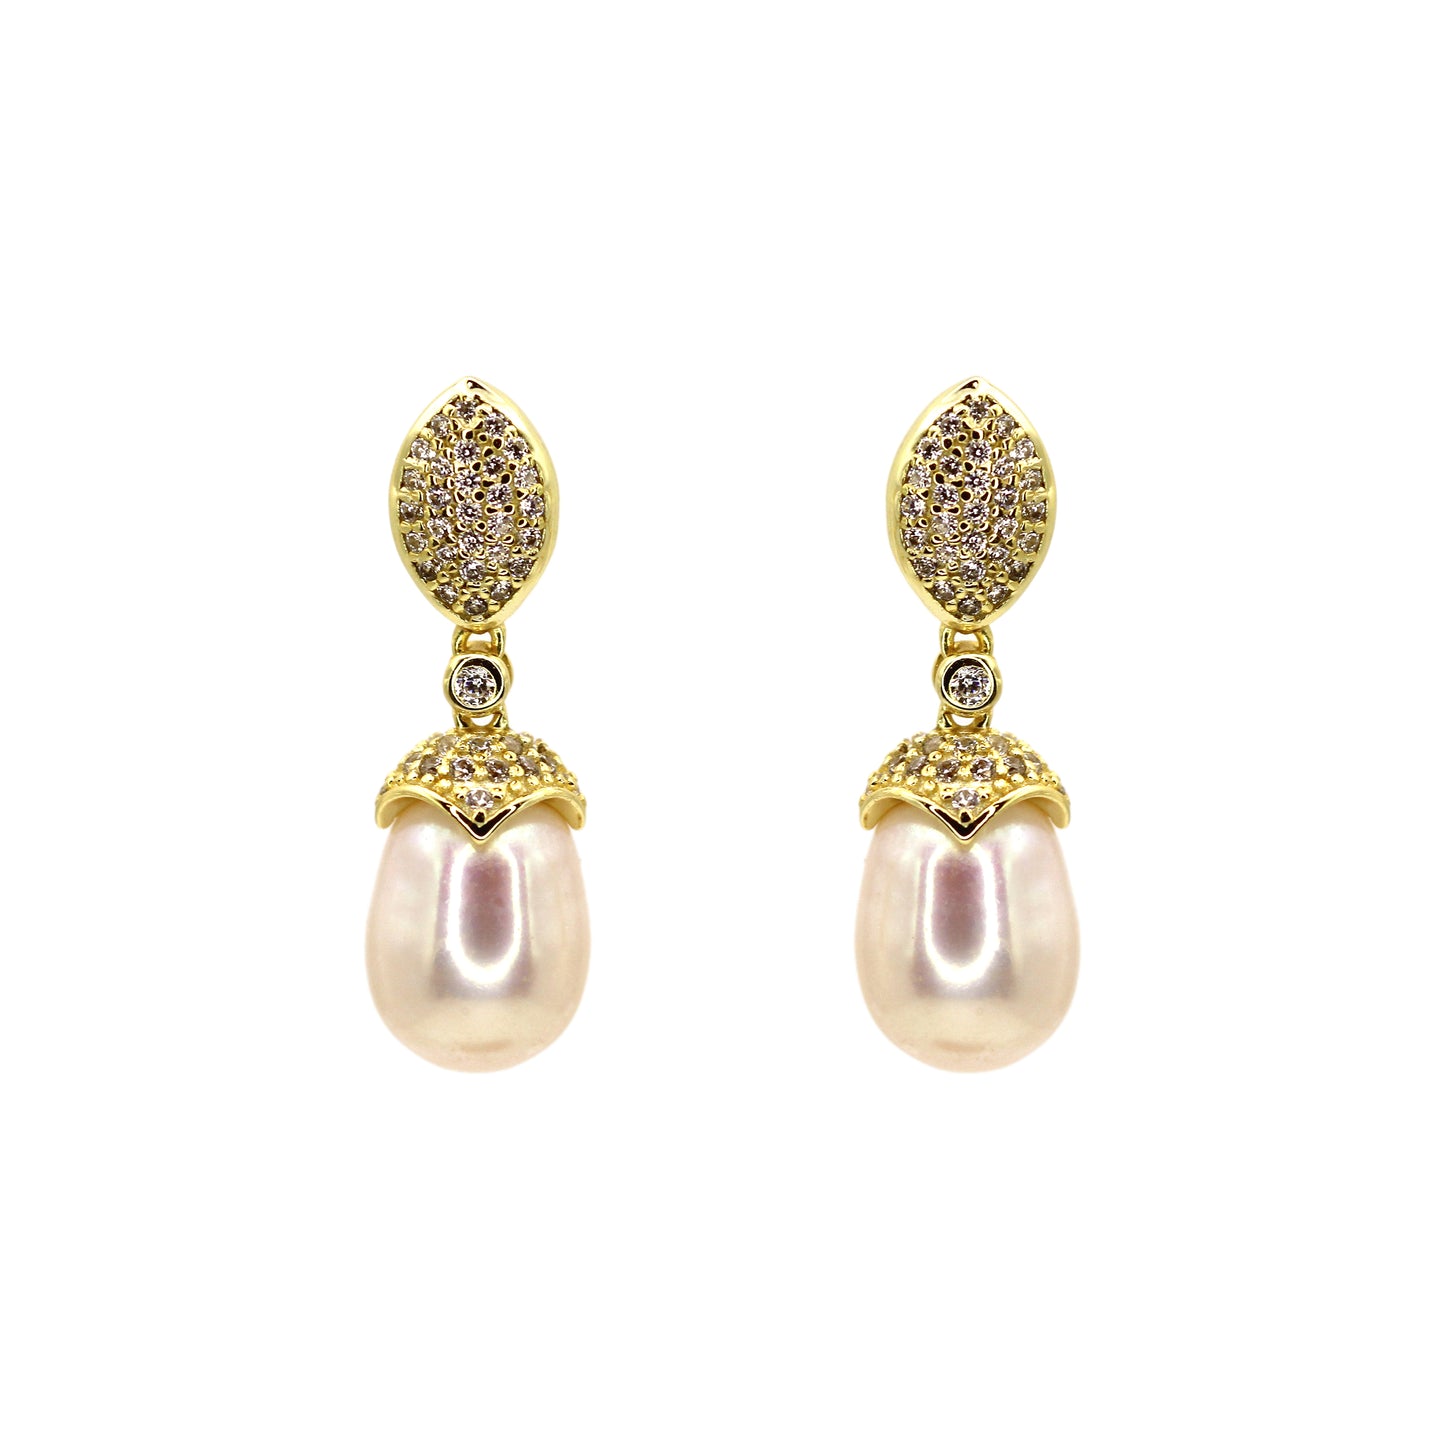 Elegant Golden Natural Pearl Dangle Earrings